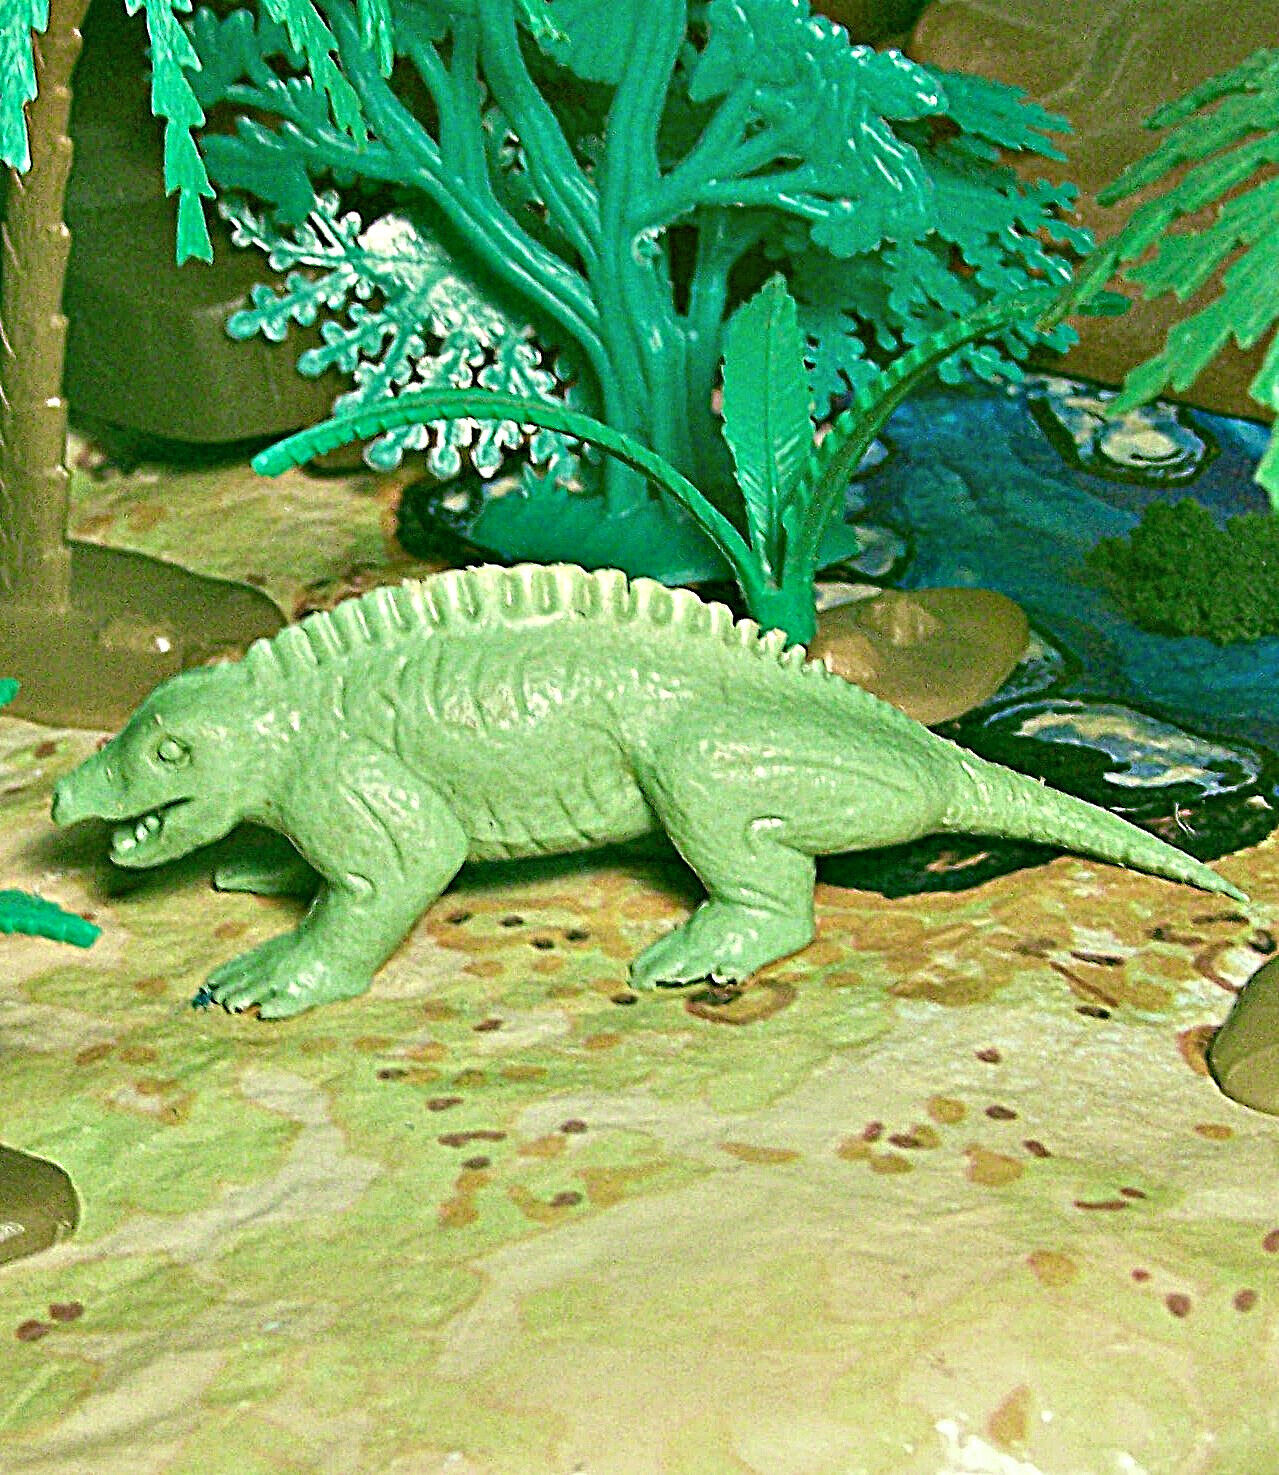 Marx 1955/1960s Sphenacodon Reptile Dinosaur Green